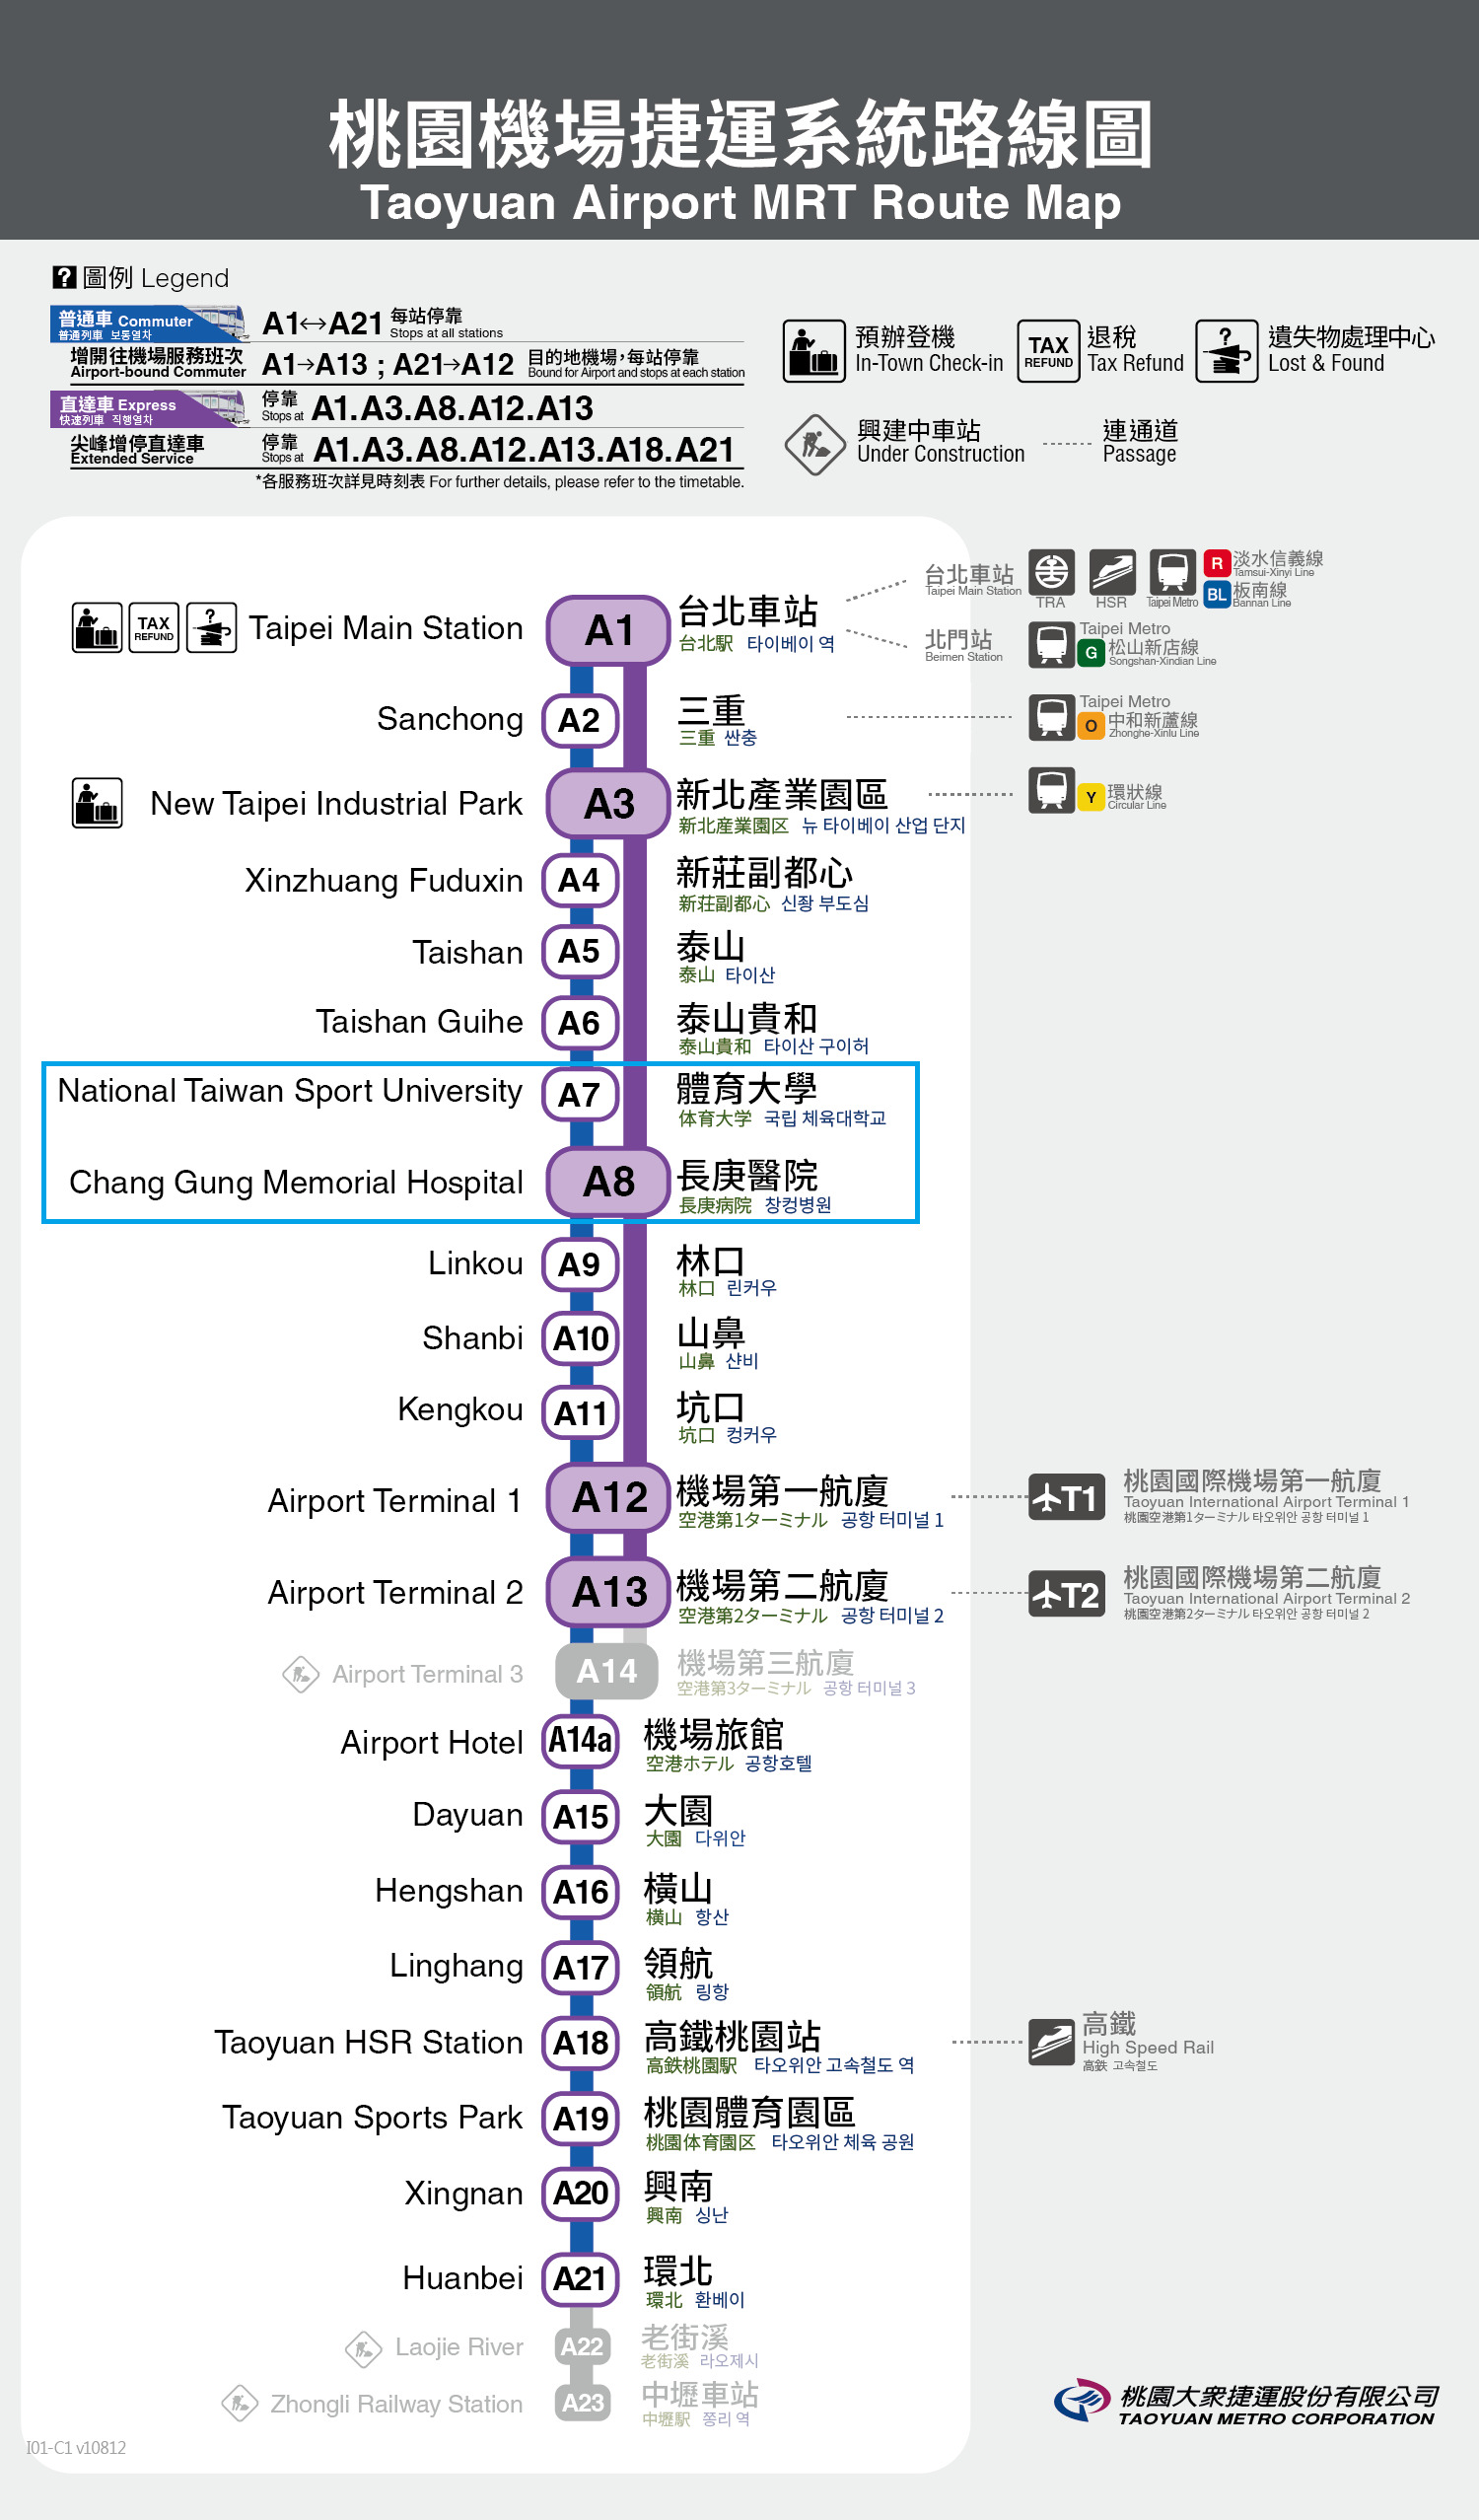 Taoyuan airport mat route map